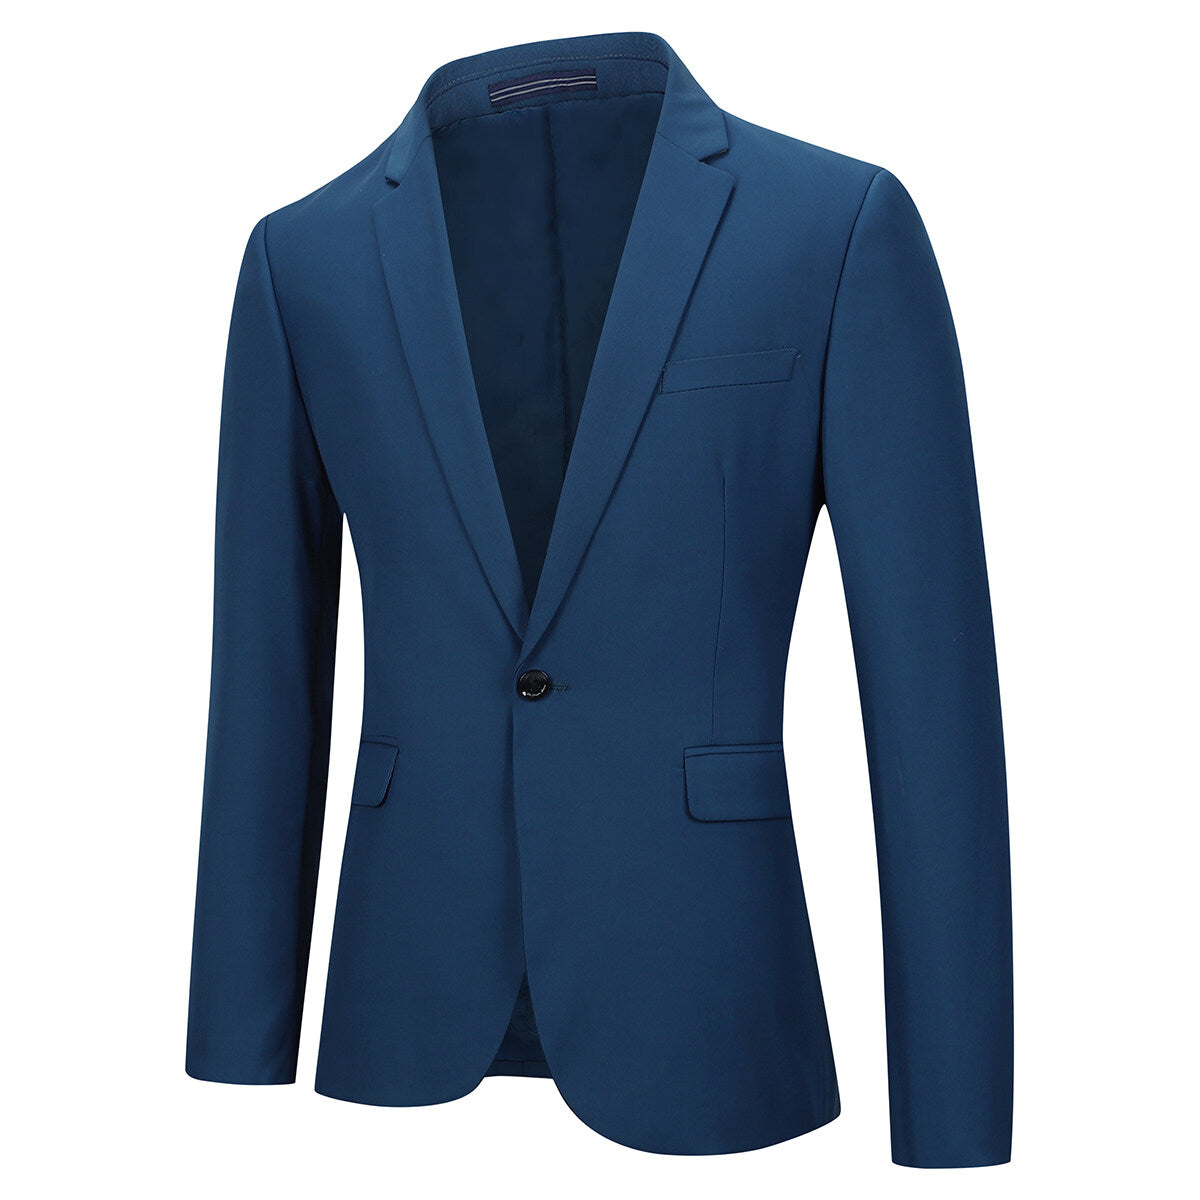 Two Piece Blue Suit One Button Suit